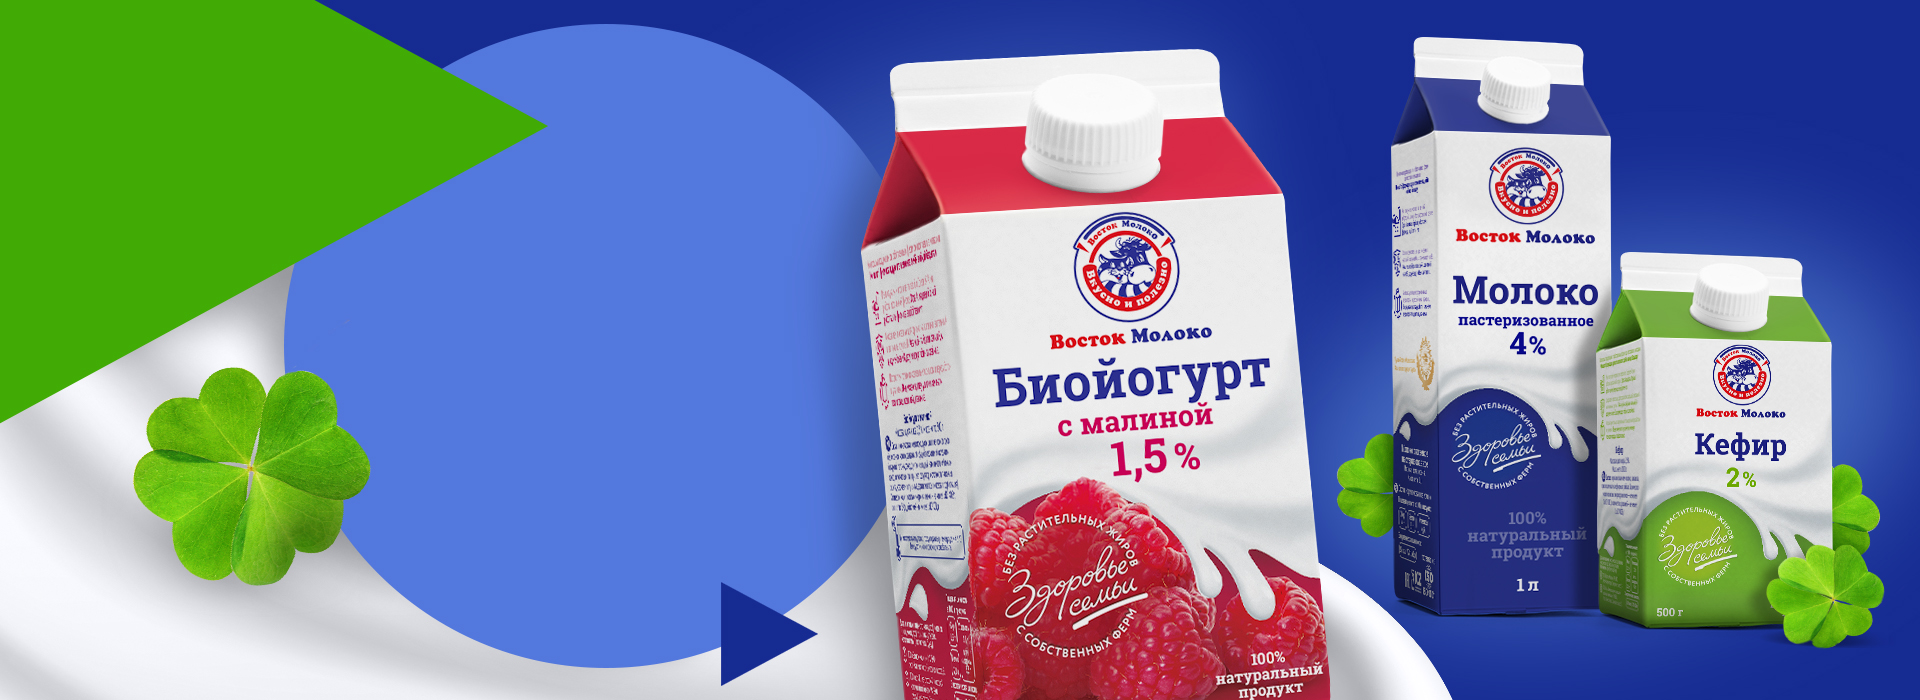 Дизайн упаковки молока «Восток Молоко» Любимый продукт в новом образе — A.STUDIO